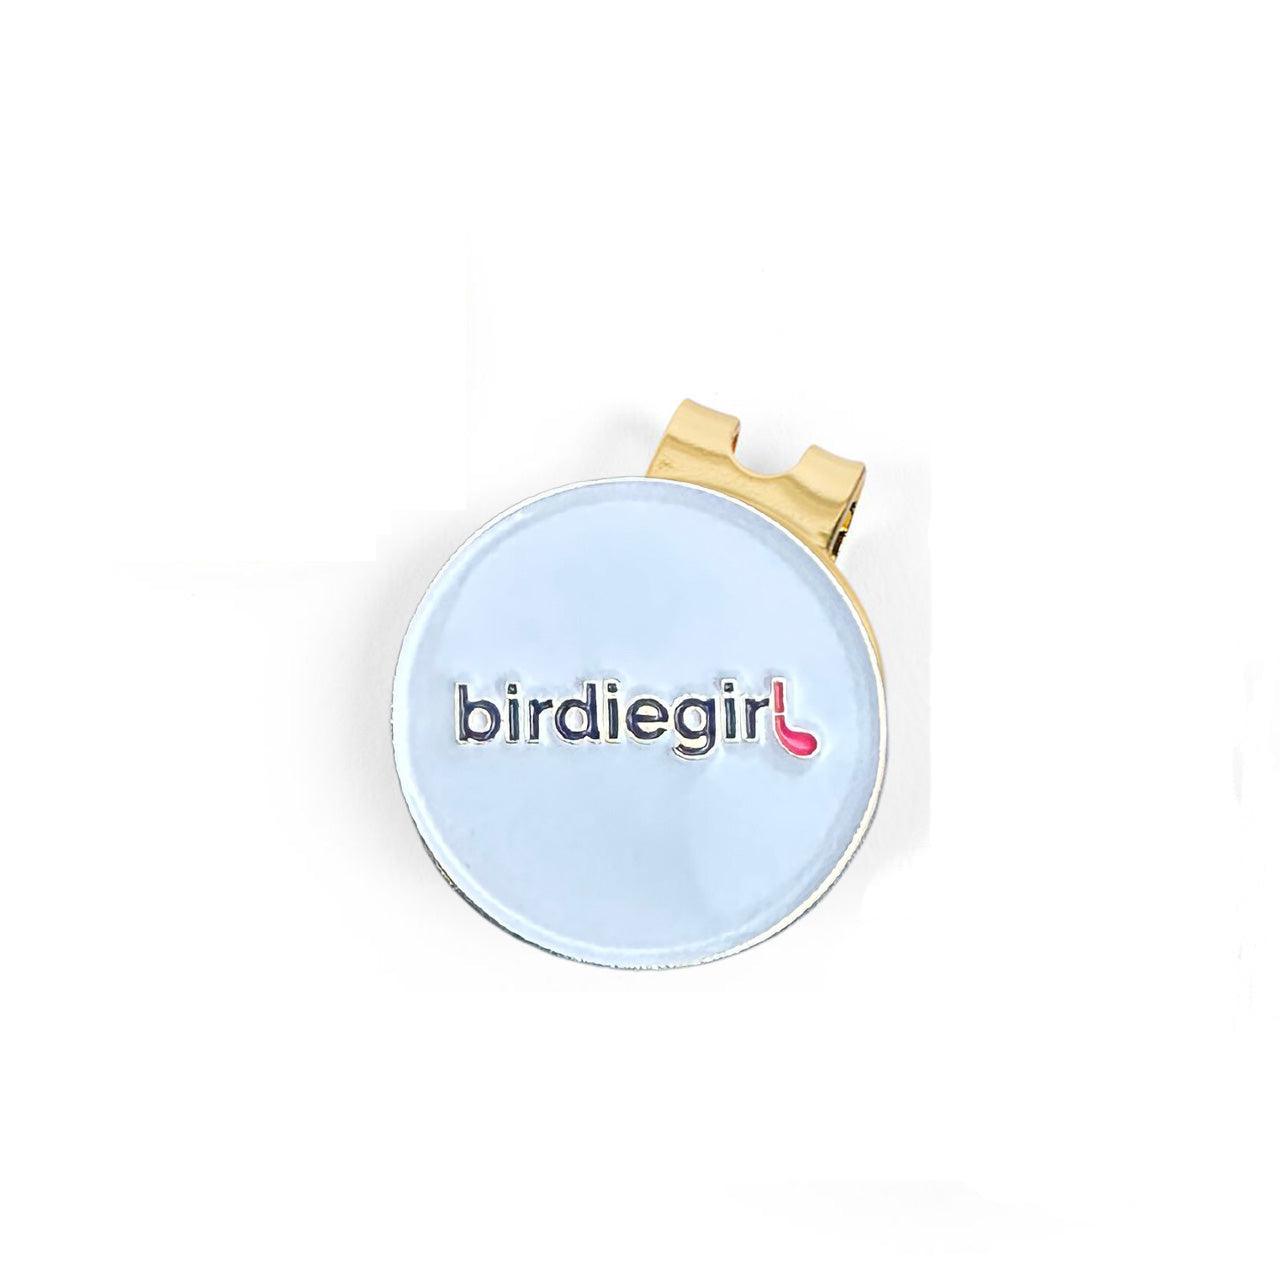 Birdie Girl Ball Marker with Magnet Hat Clip - Birdie Girl Golf